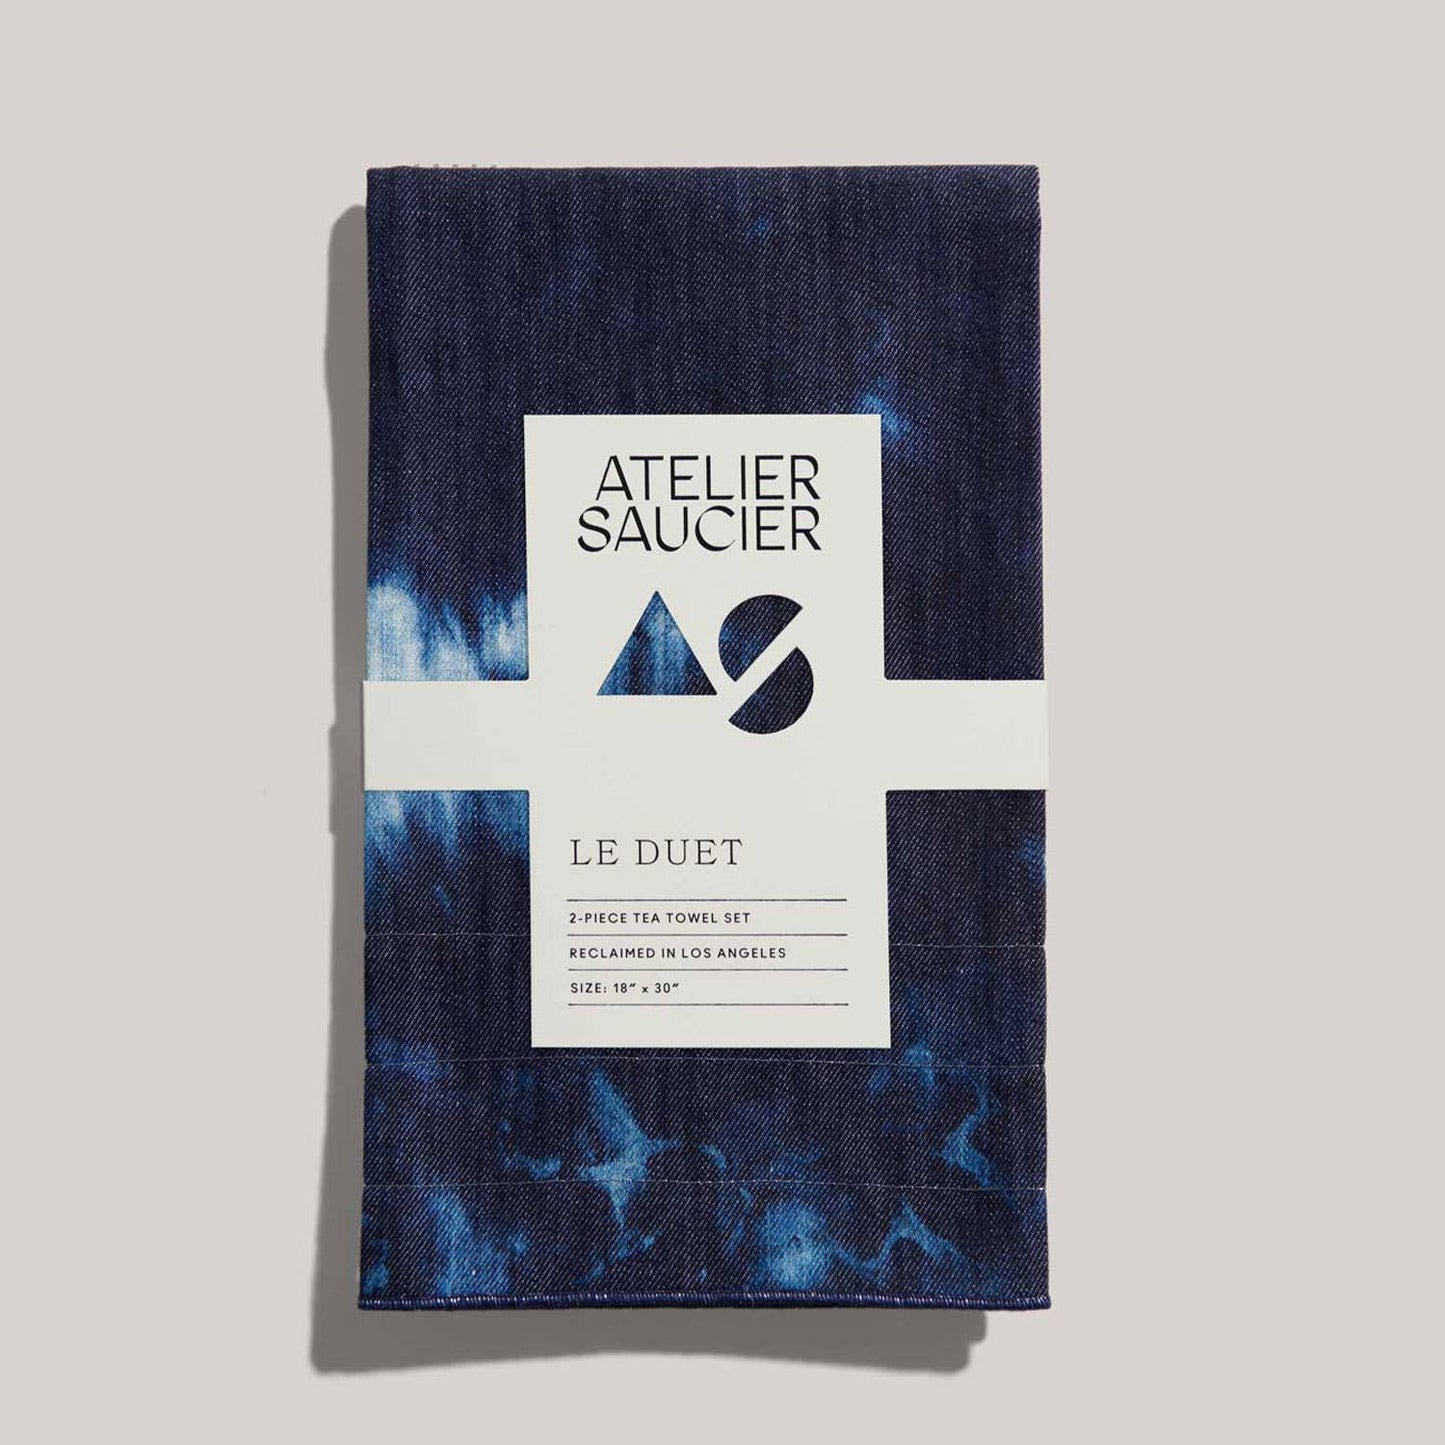 Atelier Saucier's After Party Tea Towel Set